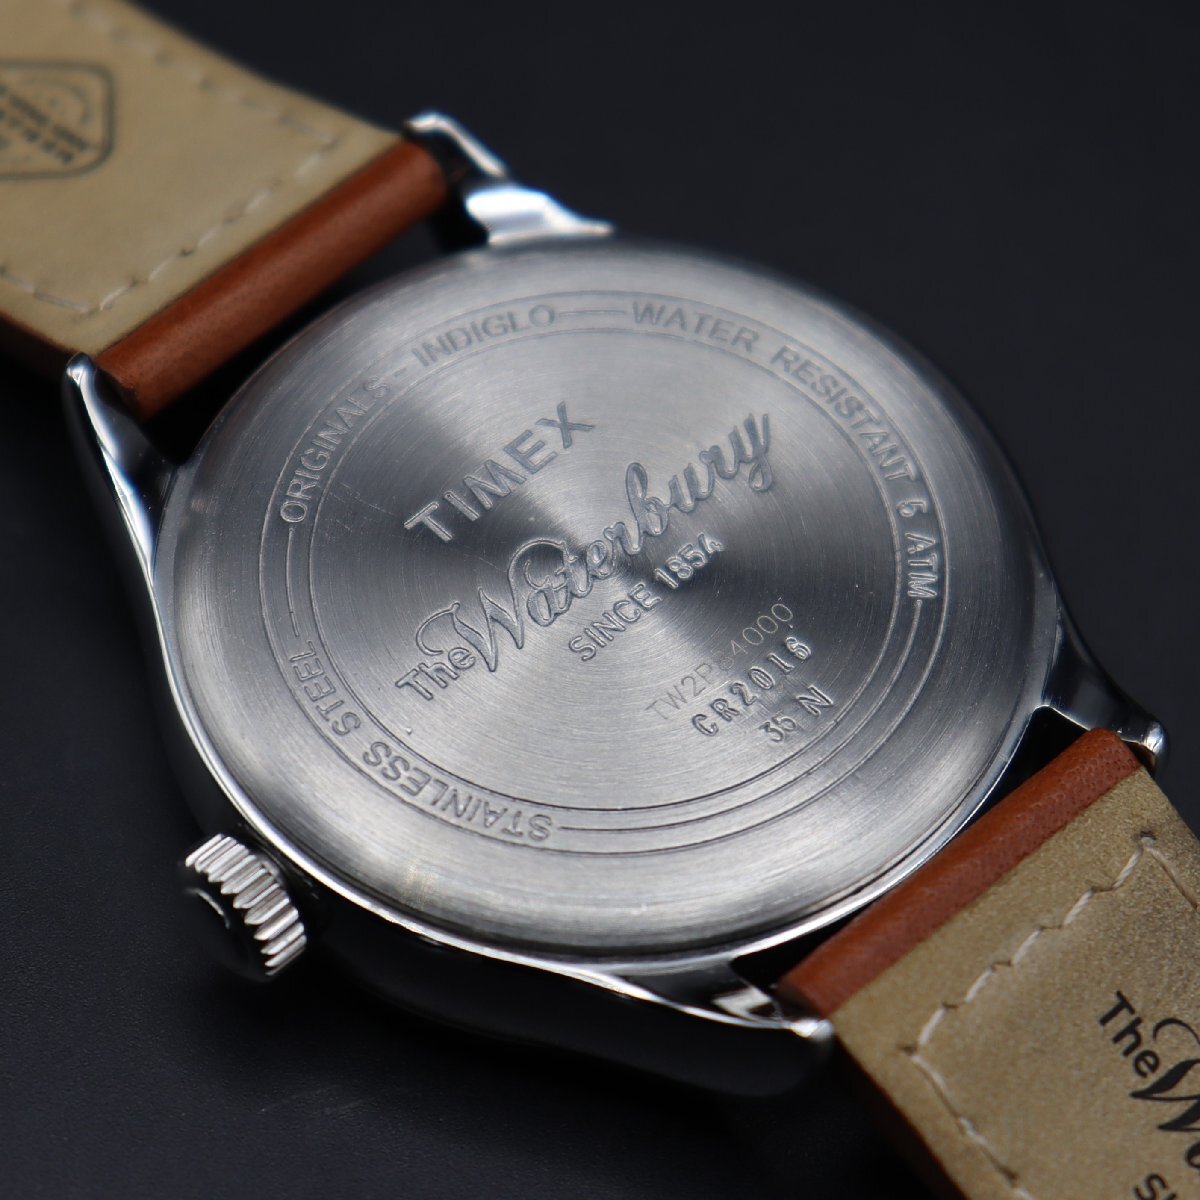  редкий TIMEX Timex вода Berry TW2P84600 CR2016 кварц Indy Glo Night свет циферблат Date оригинальный кожа ремень мужские наручные часы 